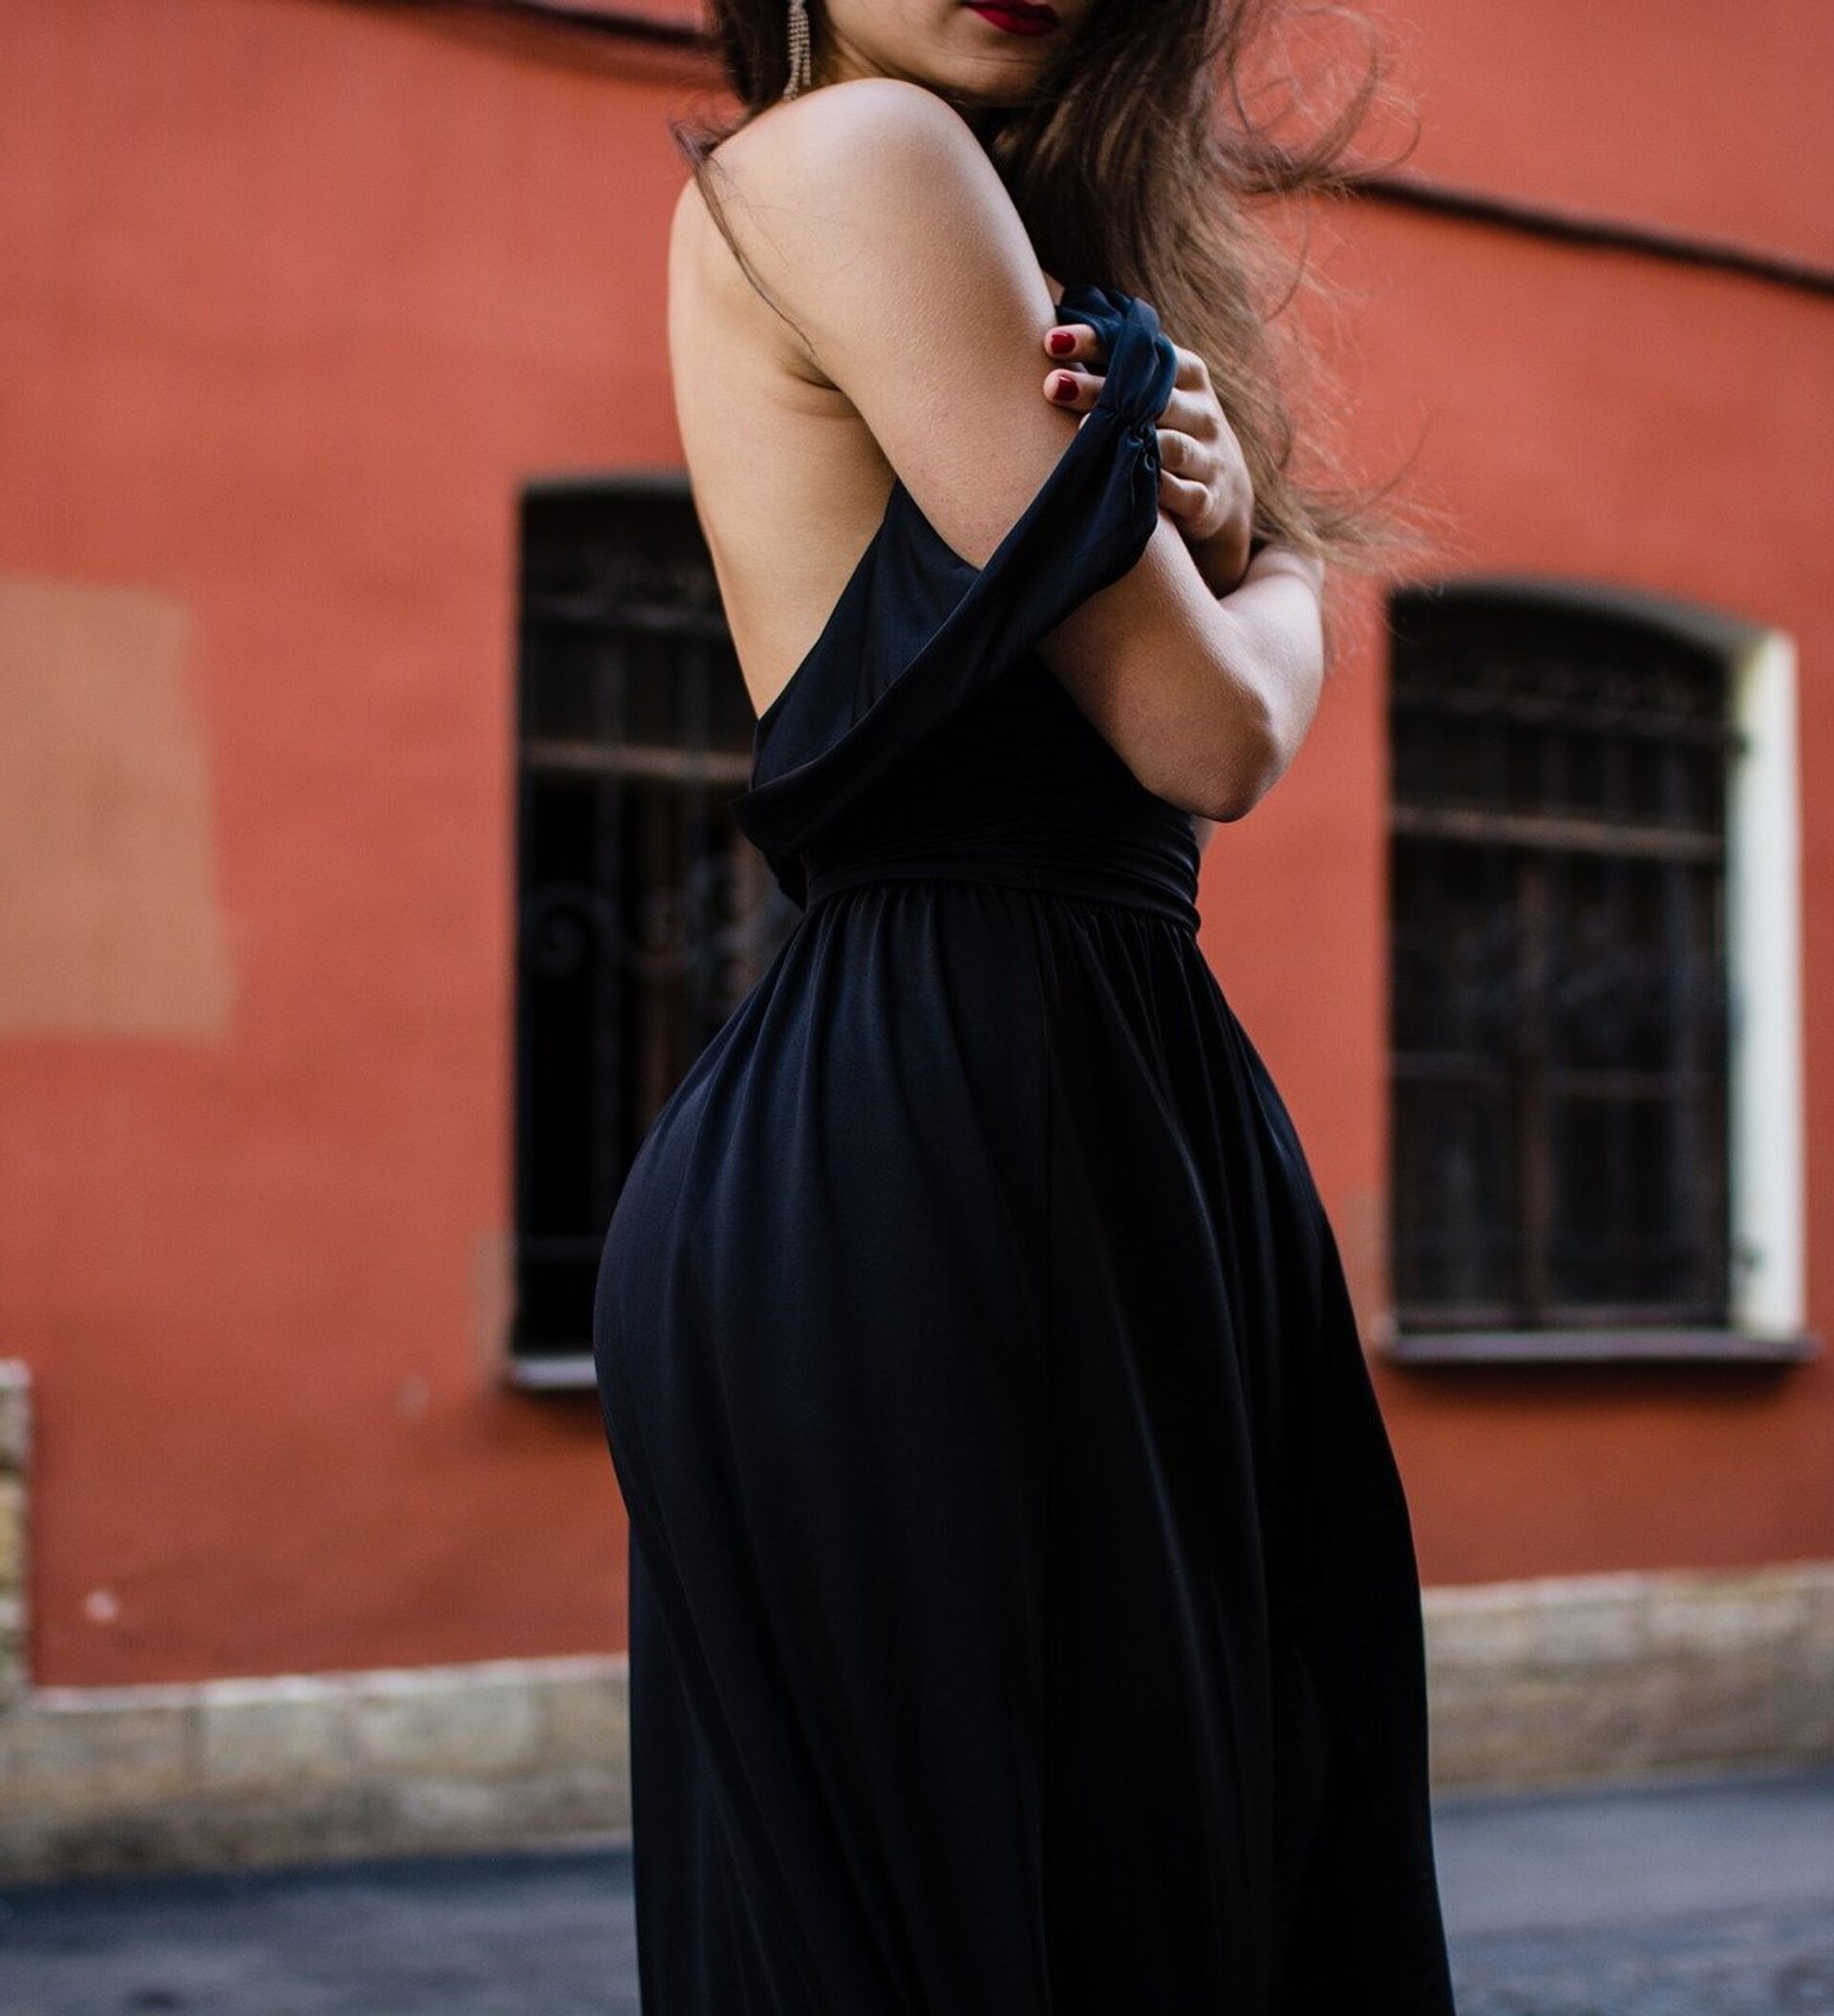 Фото Девушка длинном платье, более 97 качественных бесплатных стоковых фото